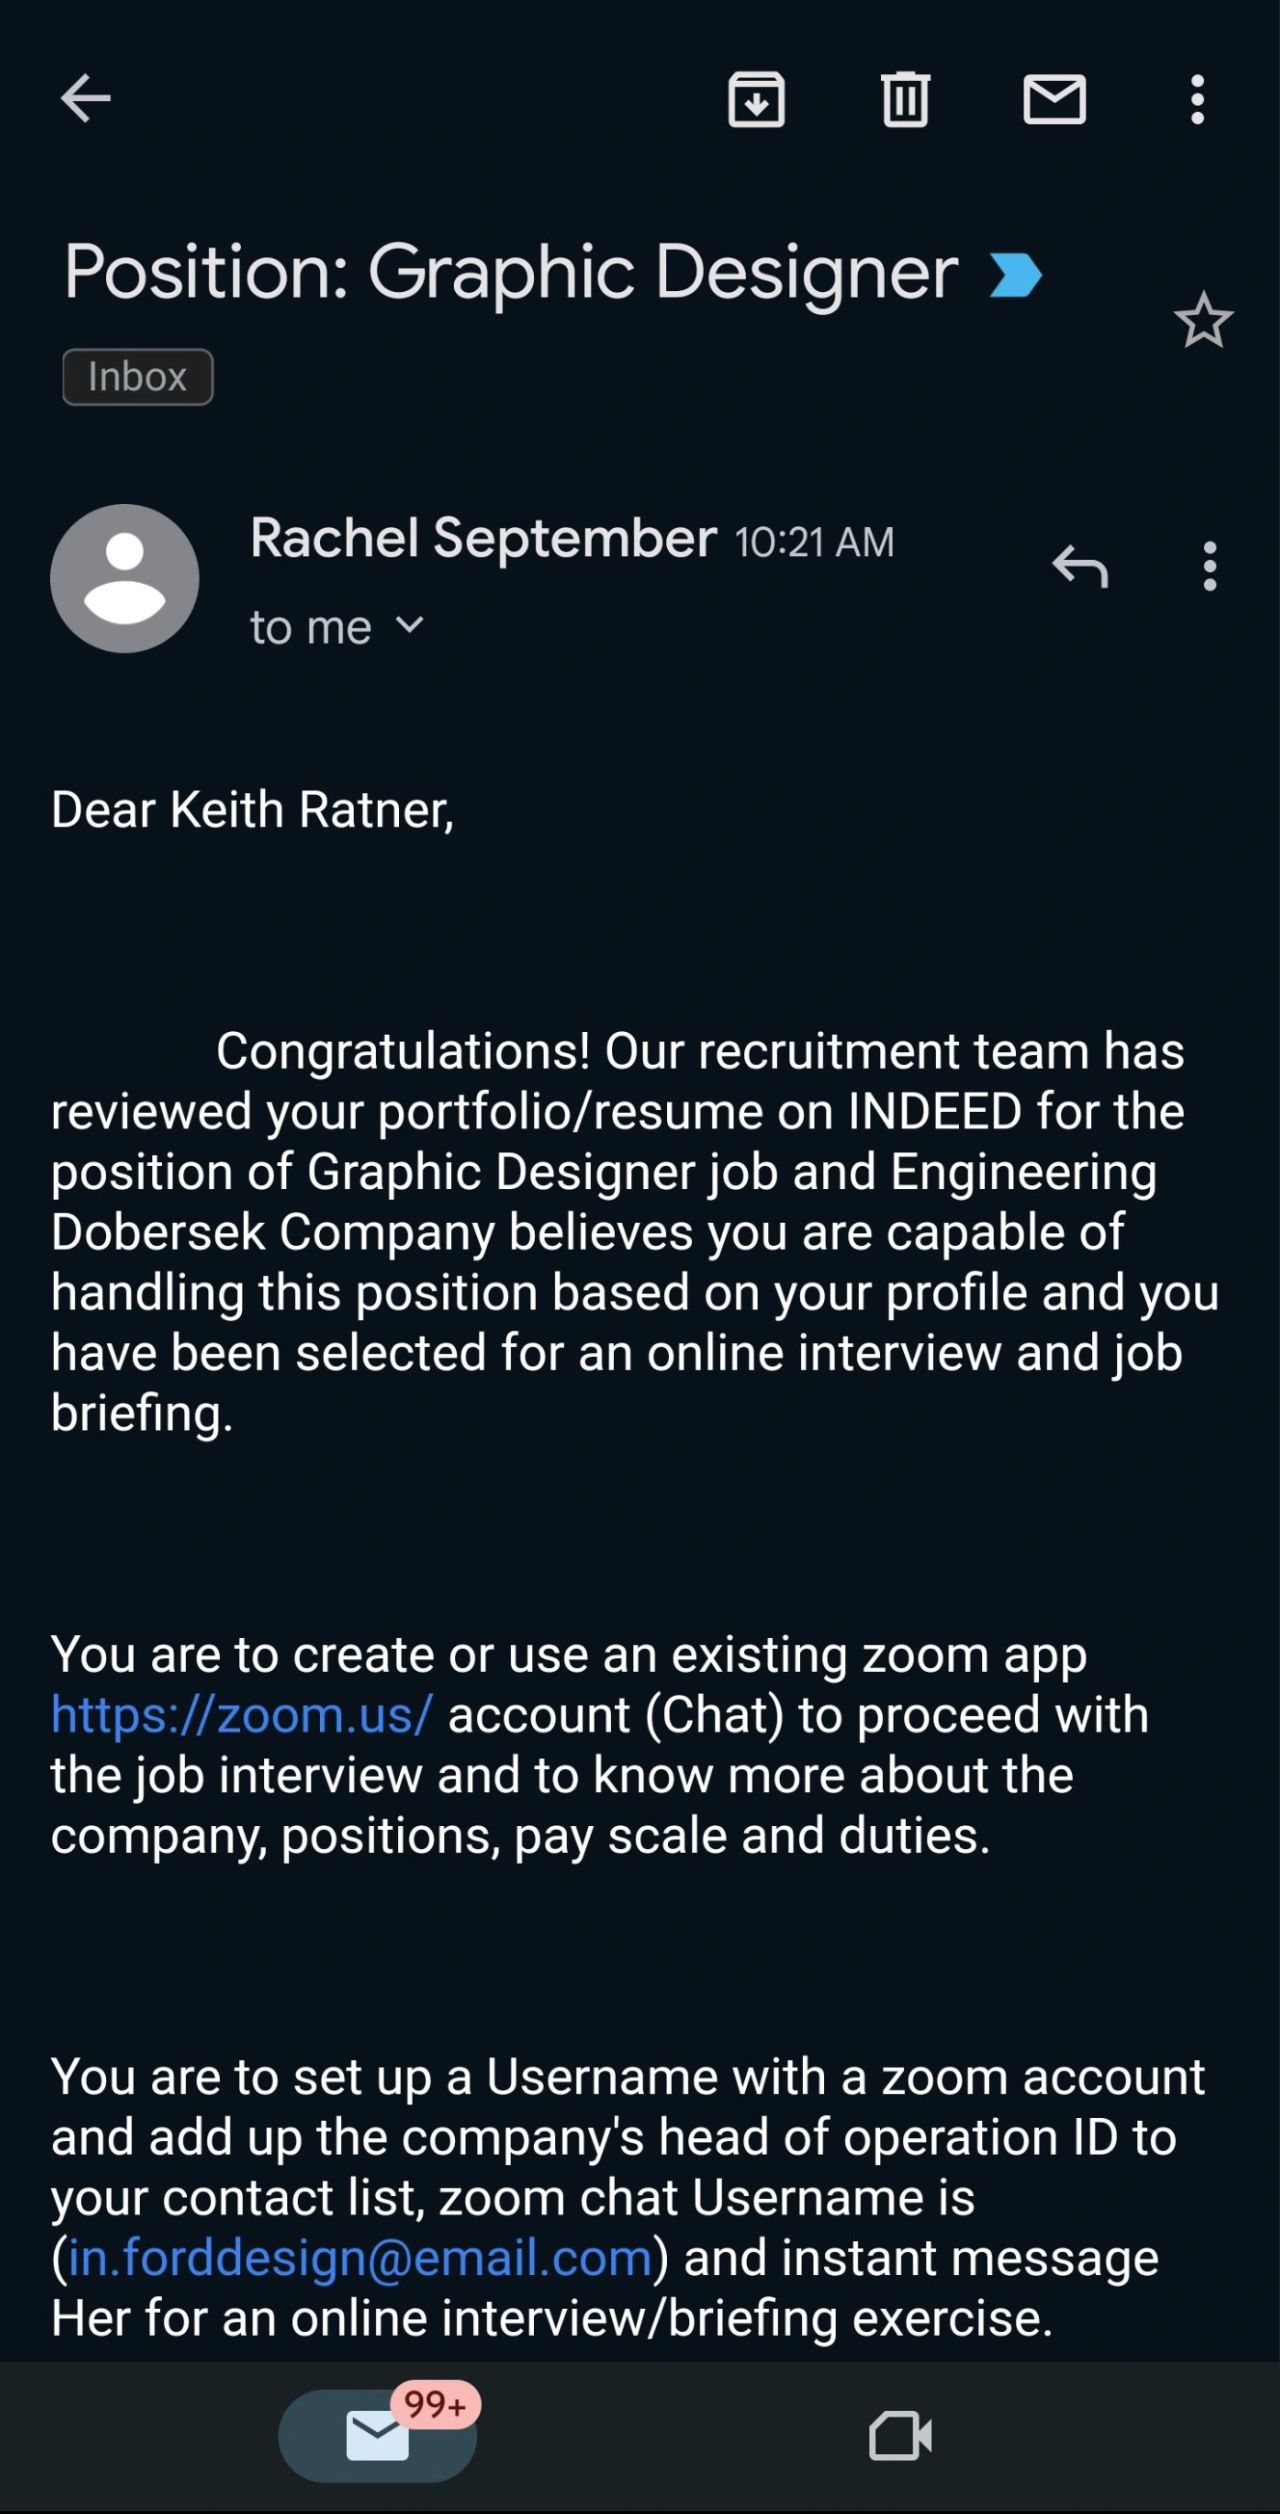 Job Scam Alert: Engineering Dobersek Company